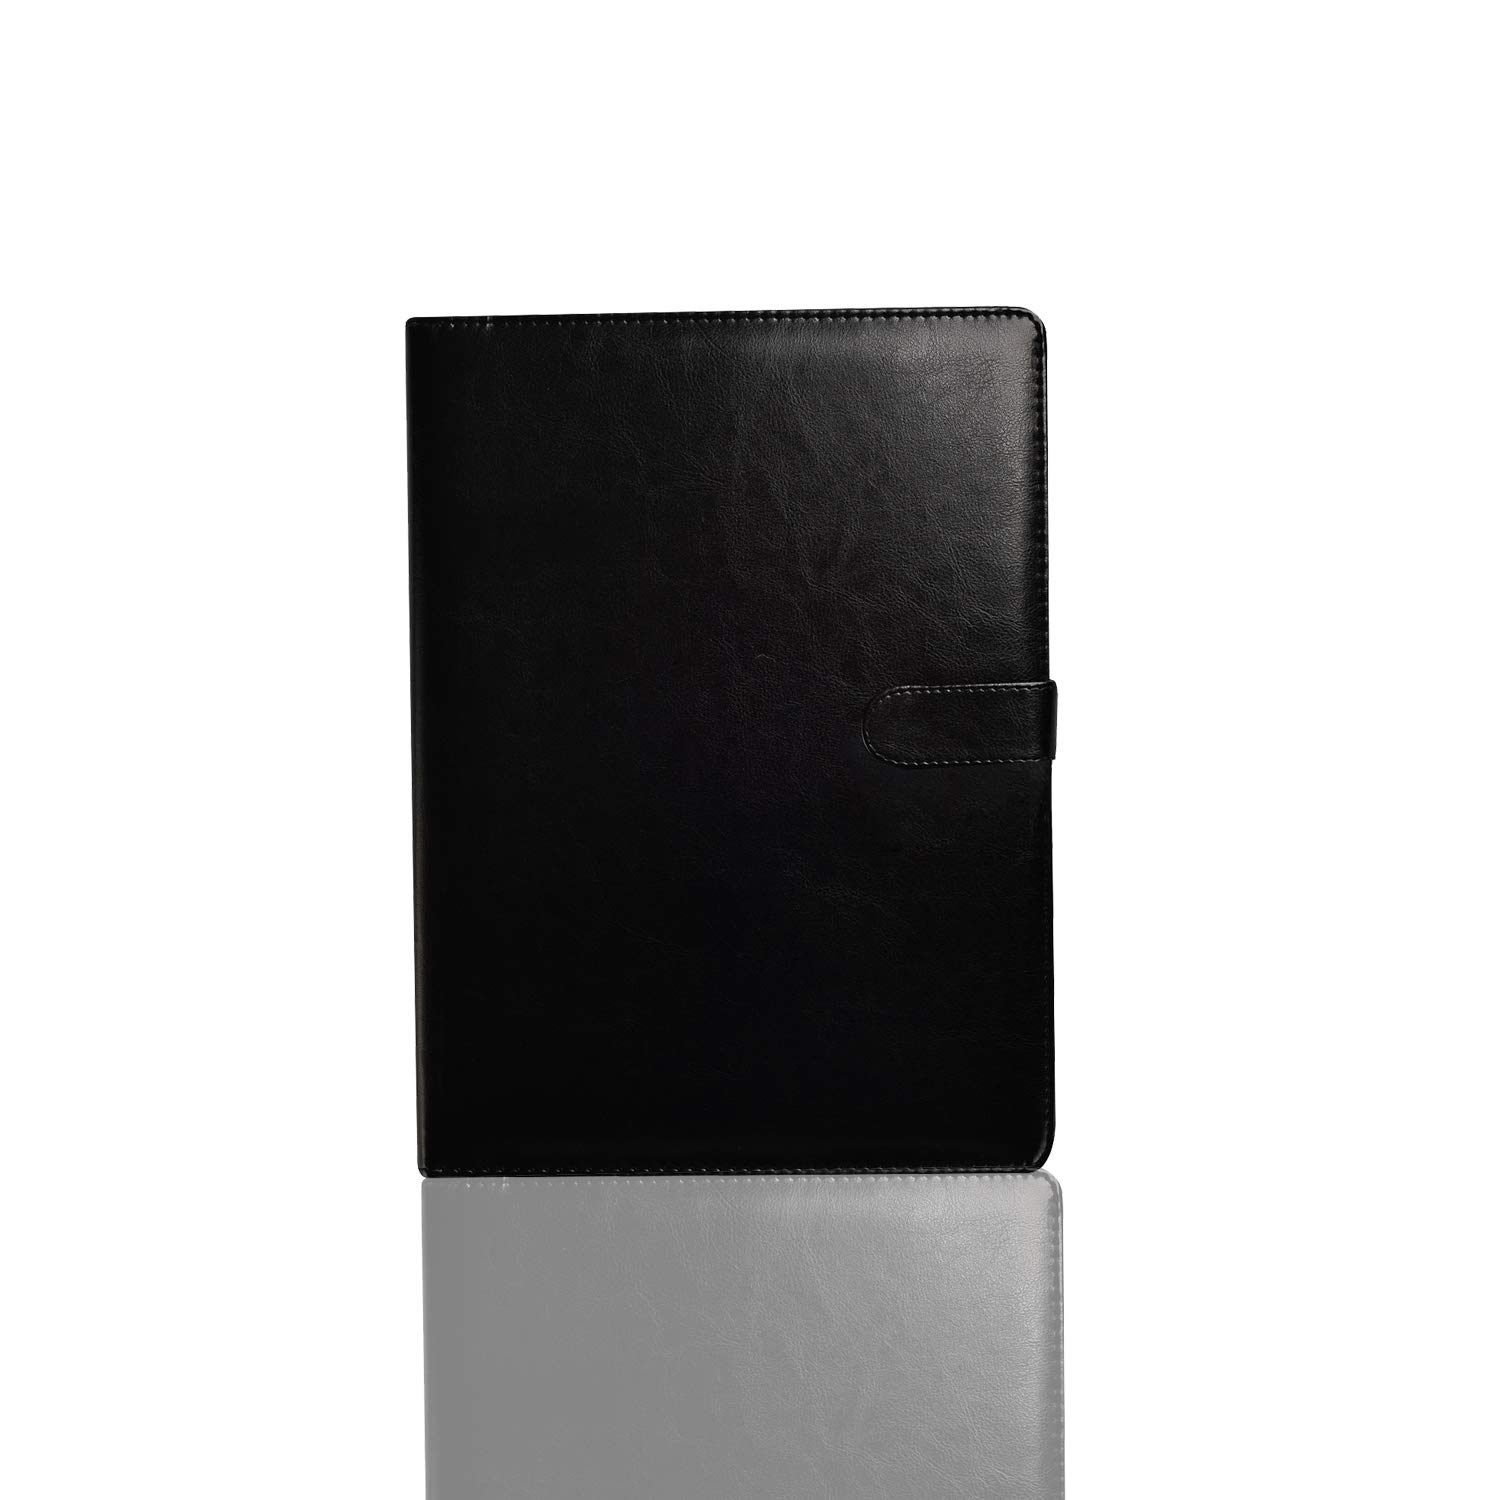 A4 Portfolio-Hülle, Executive Business Dokumenten-Organizer mit Klemmbrett und Block, Kartenhalter für Schule, Büro, Konferenz (schwarz)